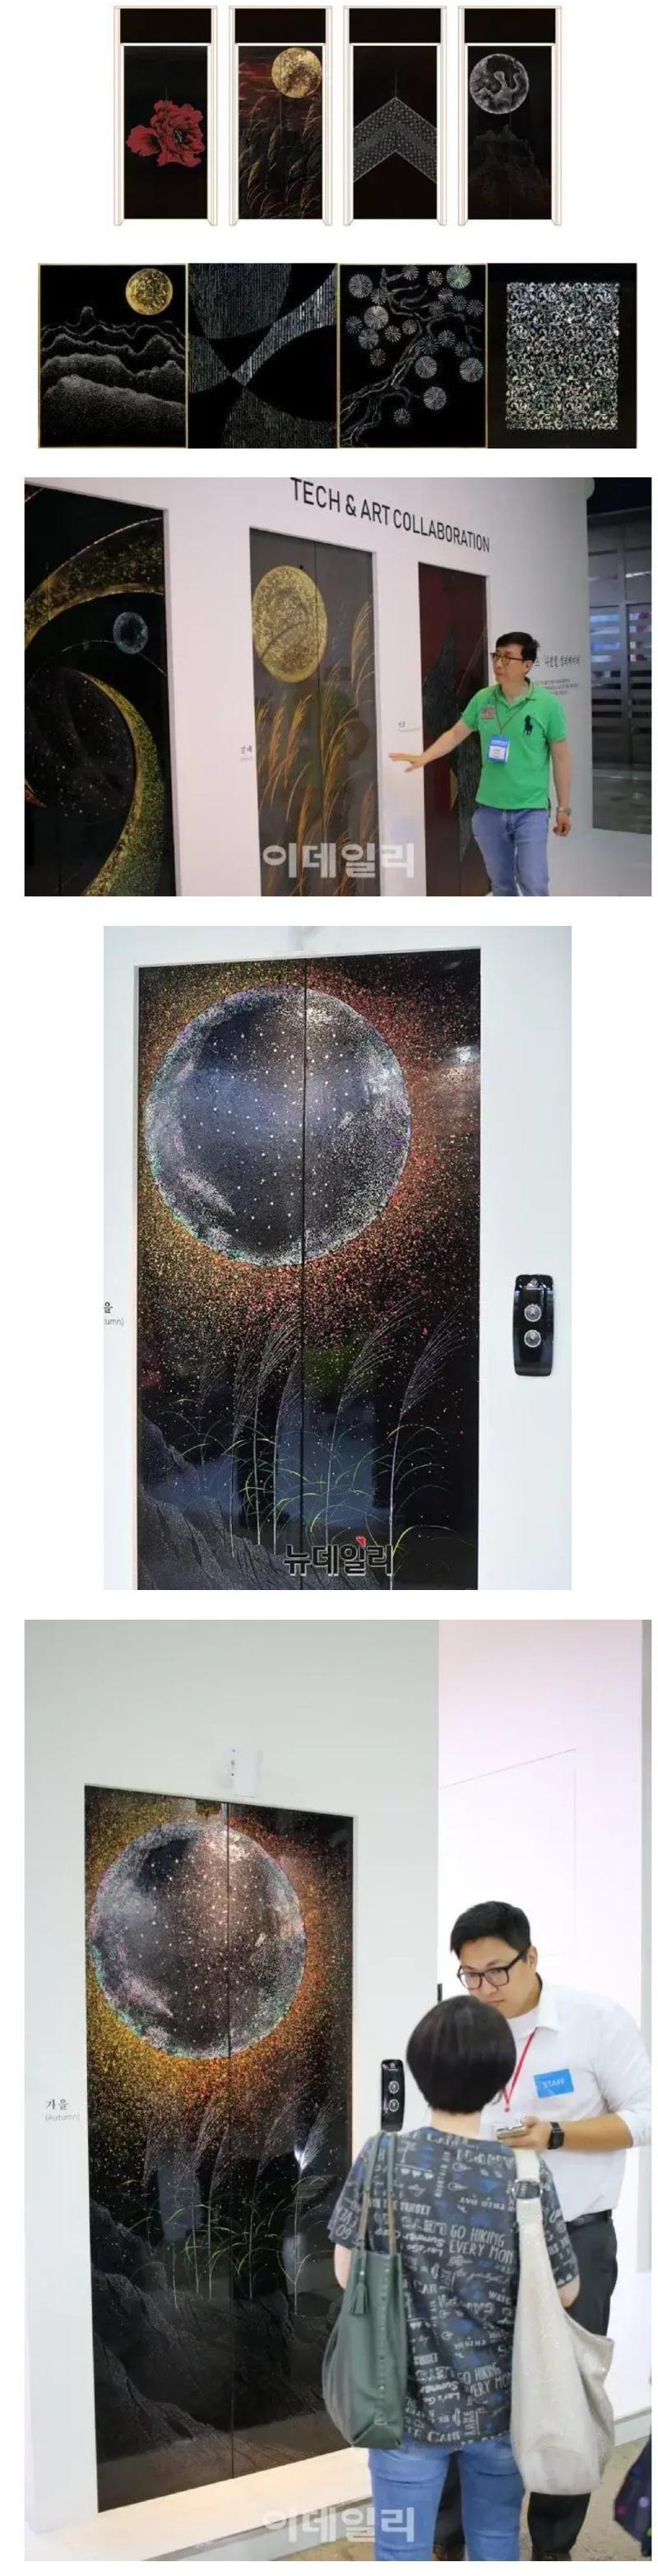 韓国の職人が作った螺鈿漆器エレベーター